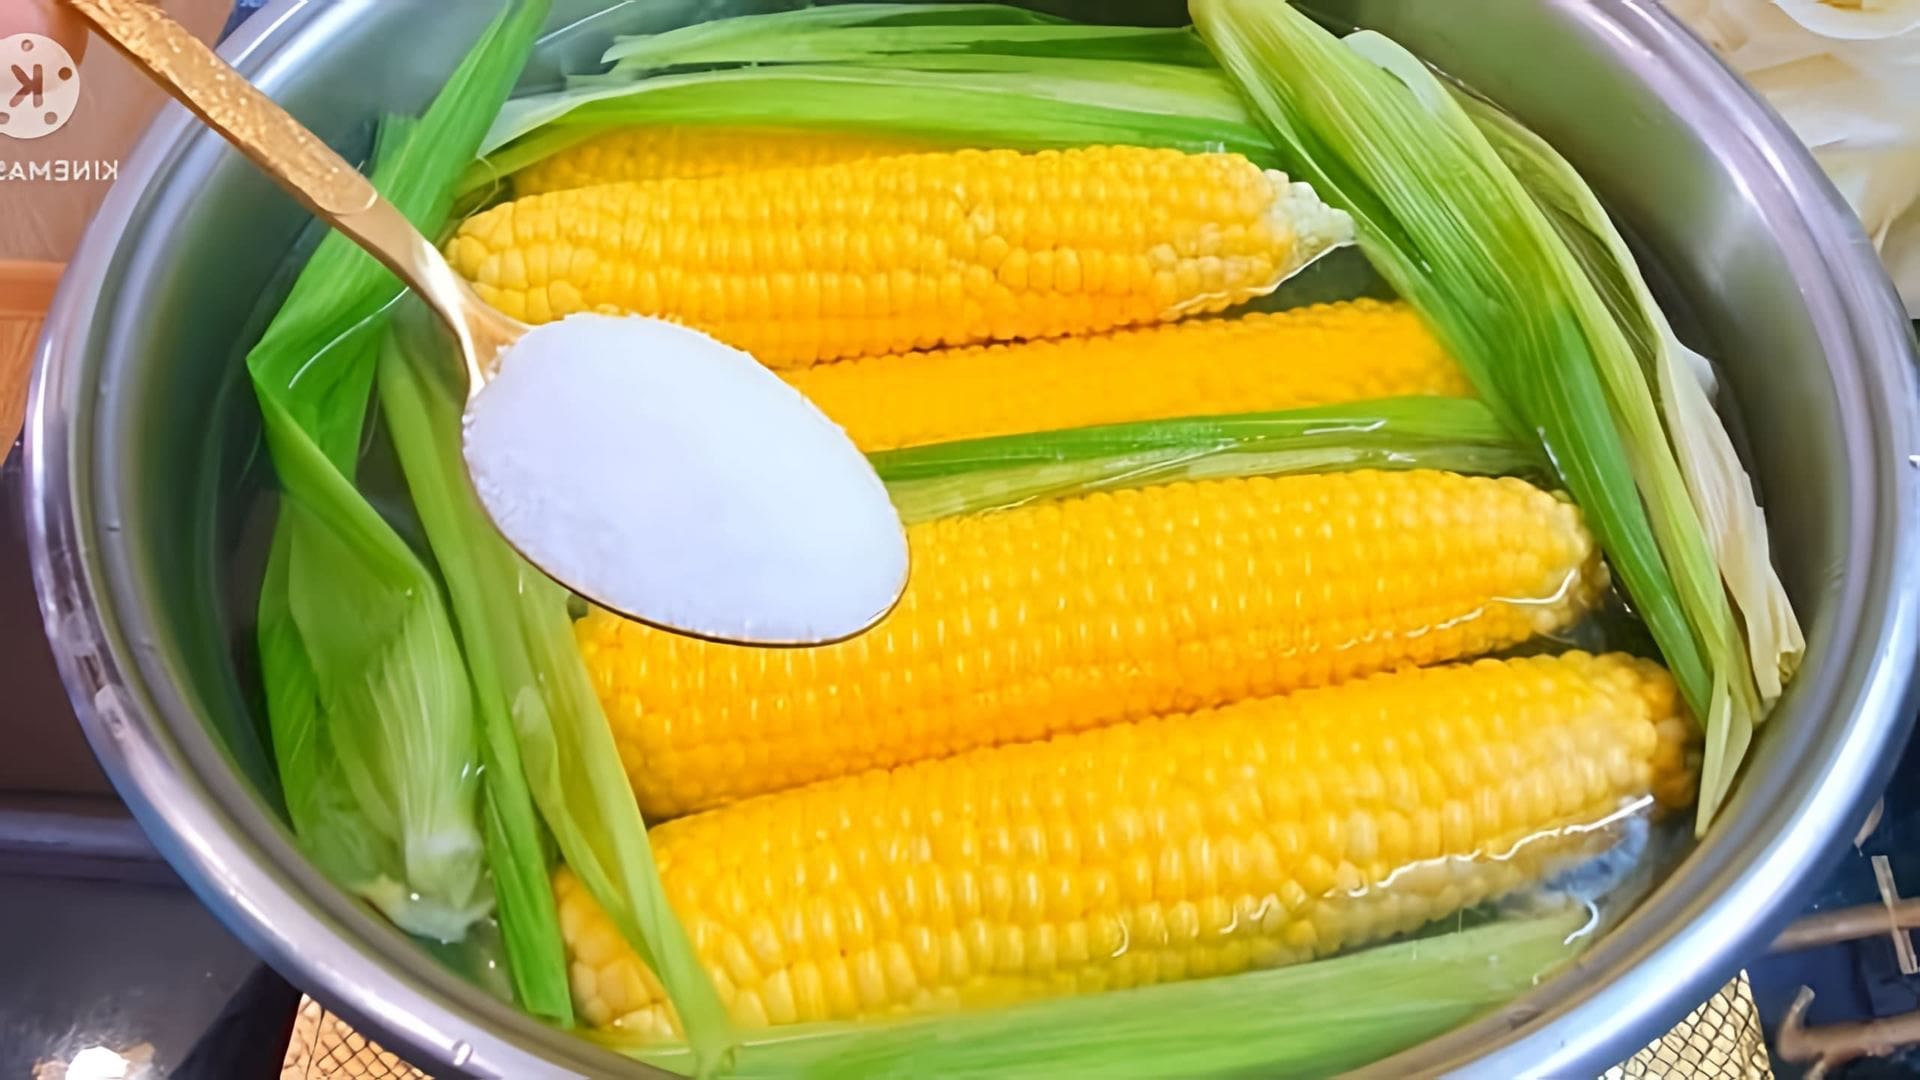 Советы и хитрости: как сварить кукурузу за 10 минут и получить сладкую, ароматную кукурузу как на море